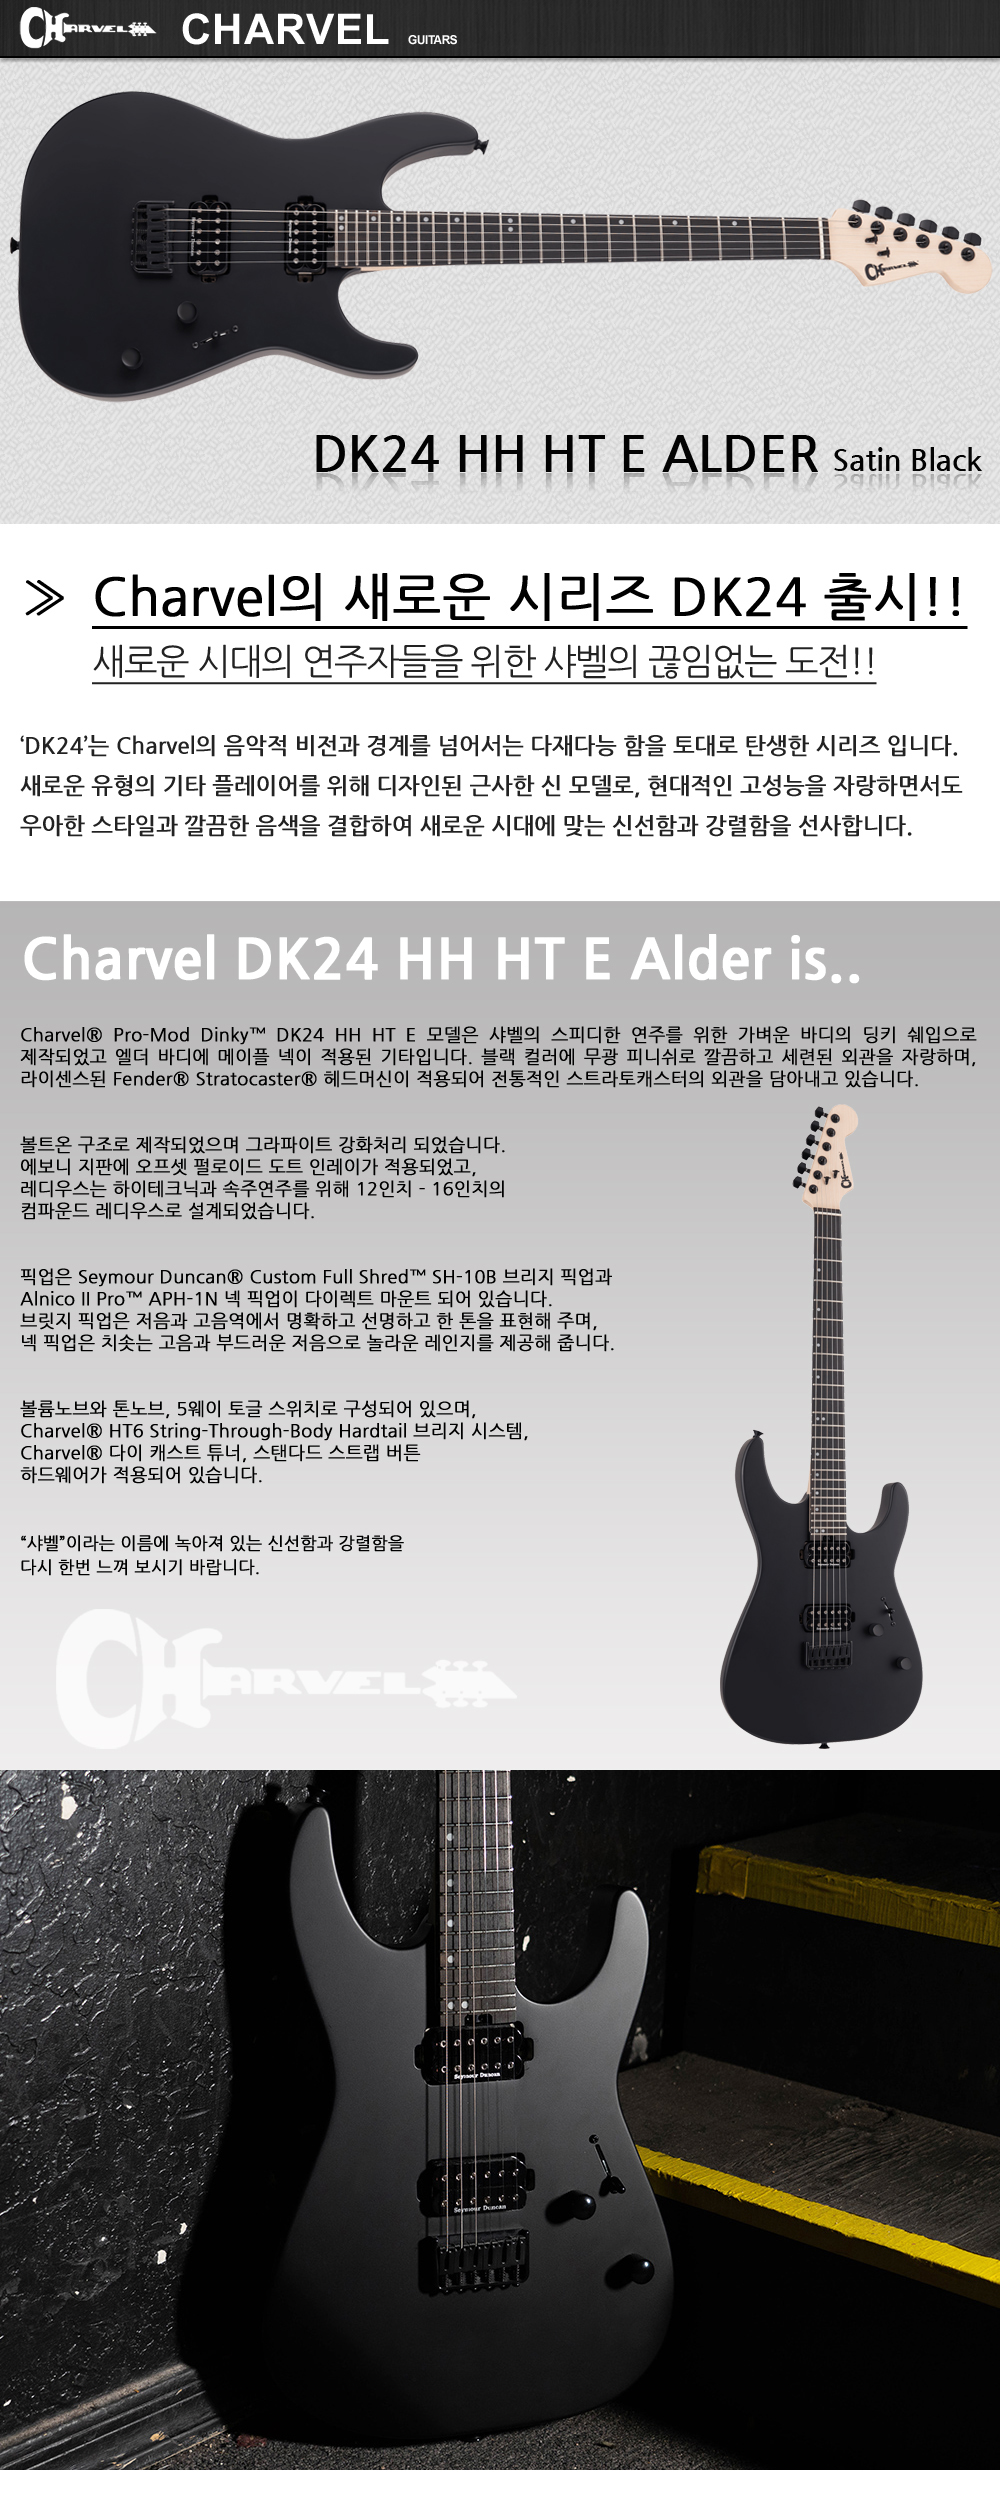 Chravel-DK24-HH-HT-E-Alder-SatinBlack_1_113130.jpg